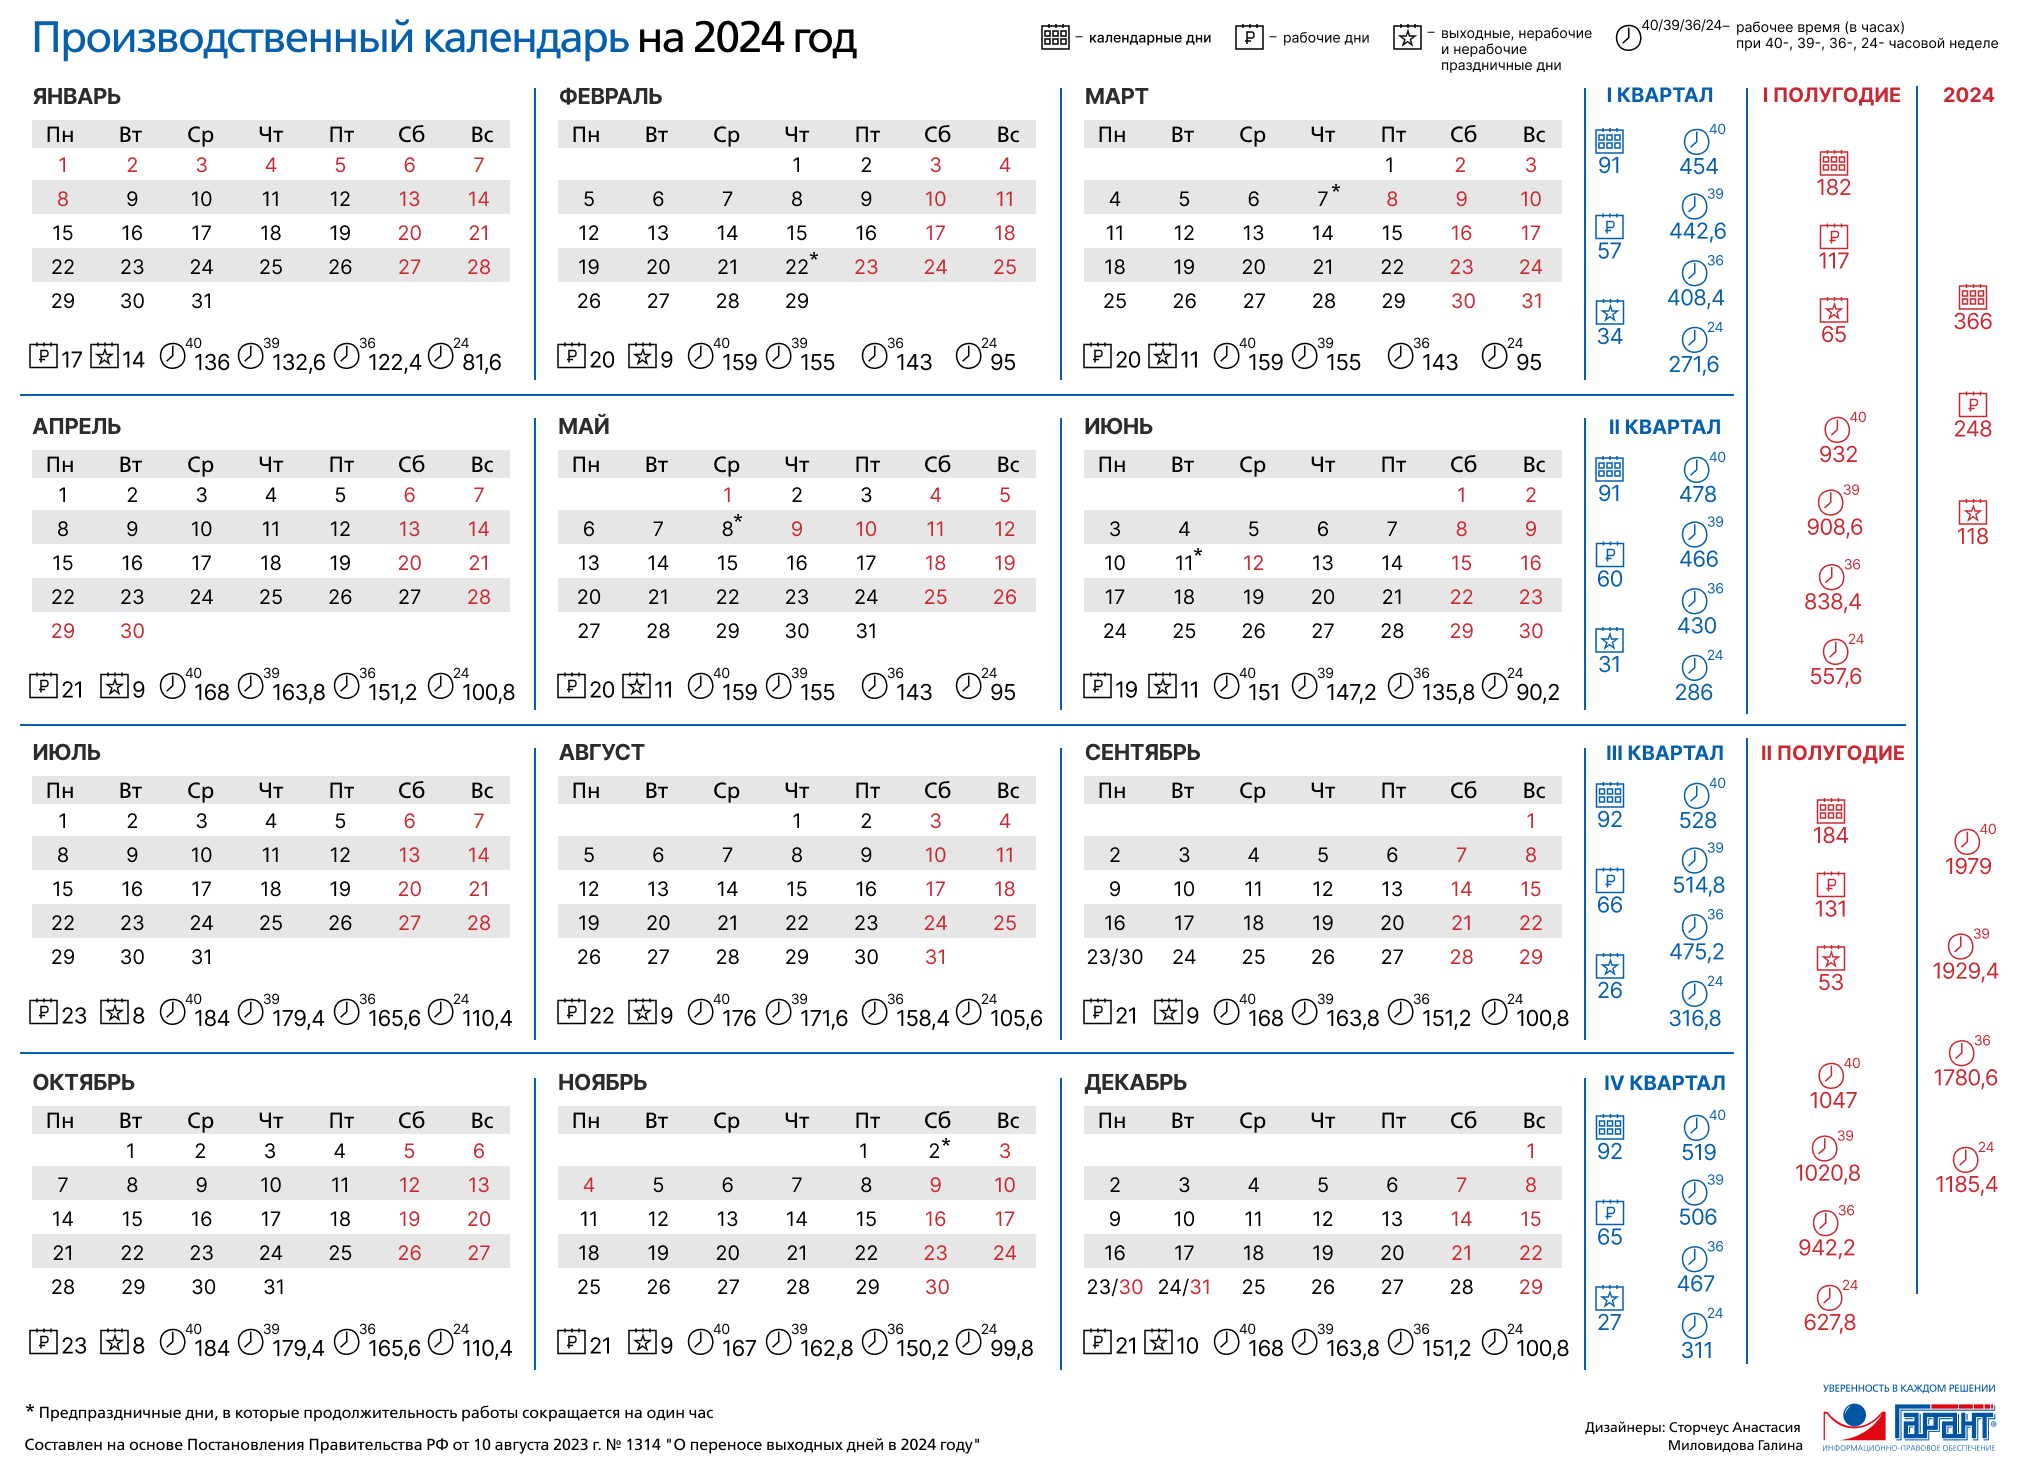 норма часов 2024 год производственный календарь